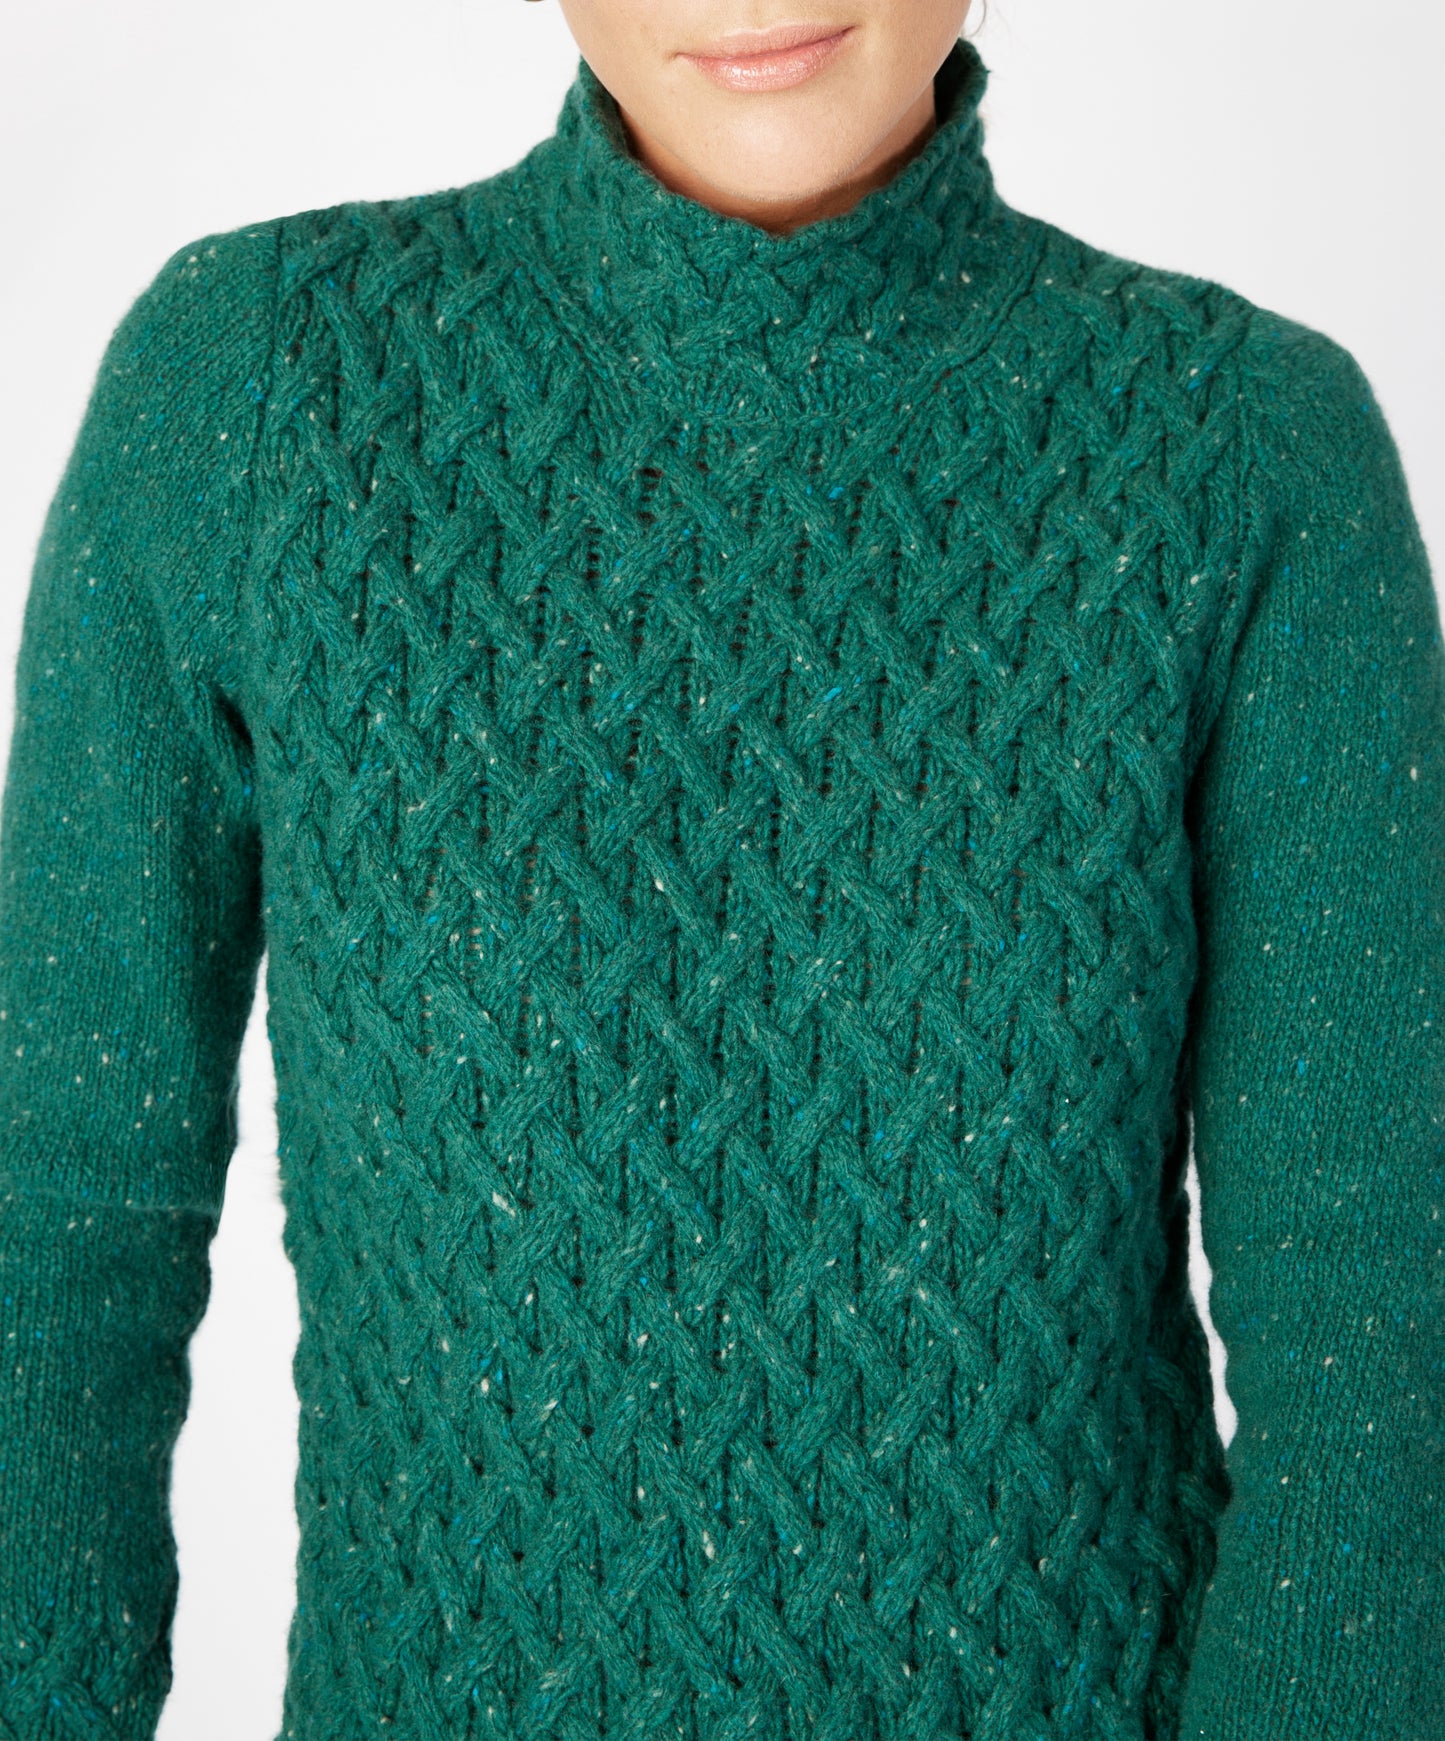 IrelandsEye Knitwear Trellis Sweater Green Garden